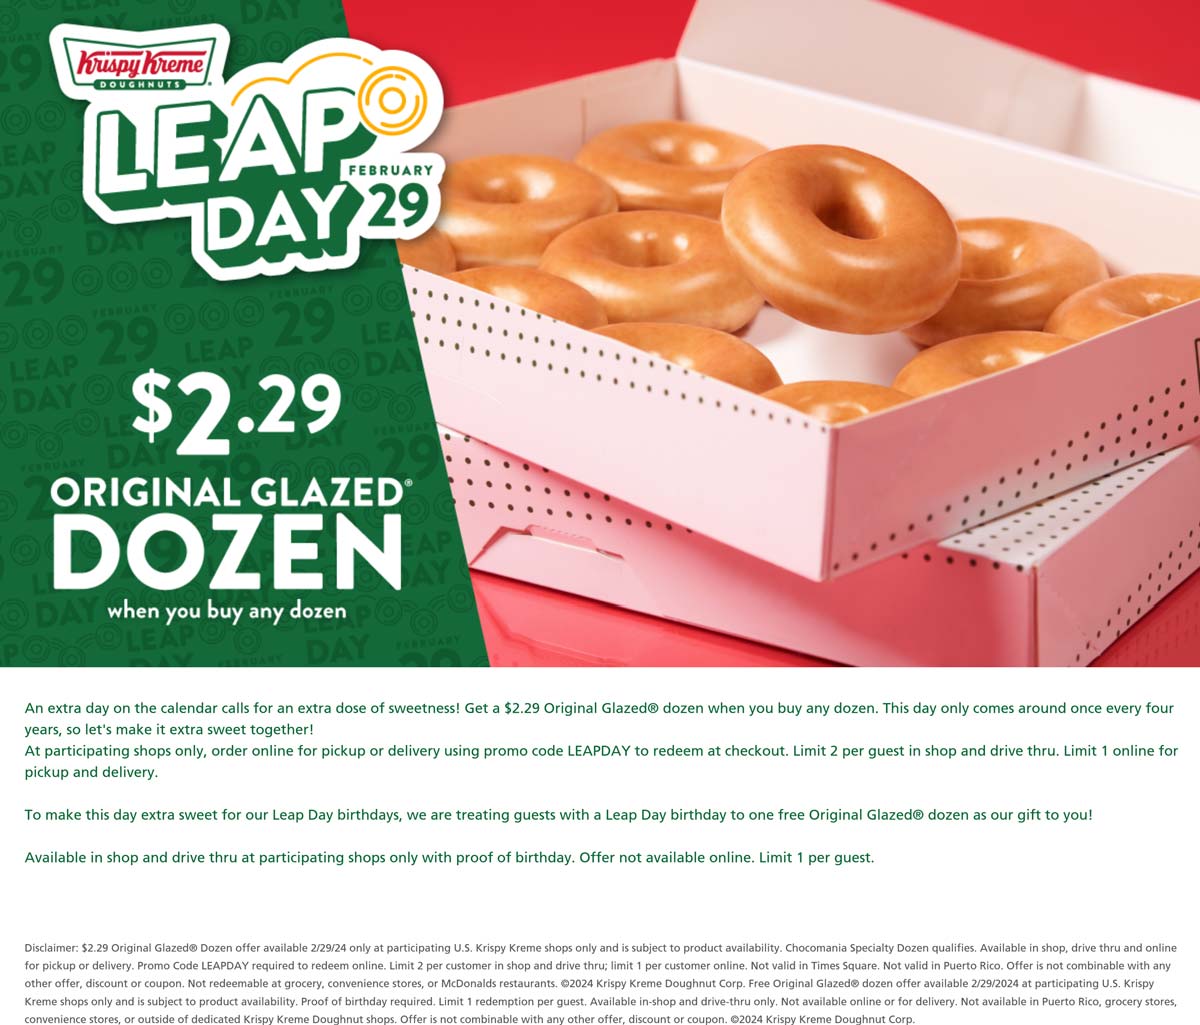 Krispy Kreme restaurants Coupon  Second dozen glazed doughnuts for $2.29 Thursday at Krispy Kreme via promo code LEAPDAY #krispykreme 